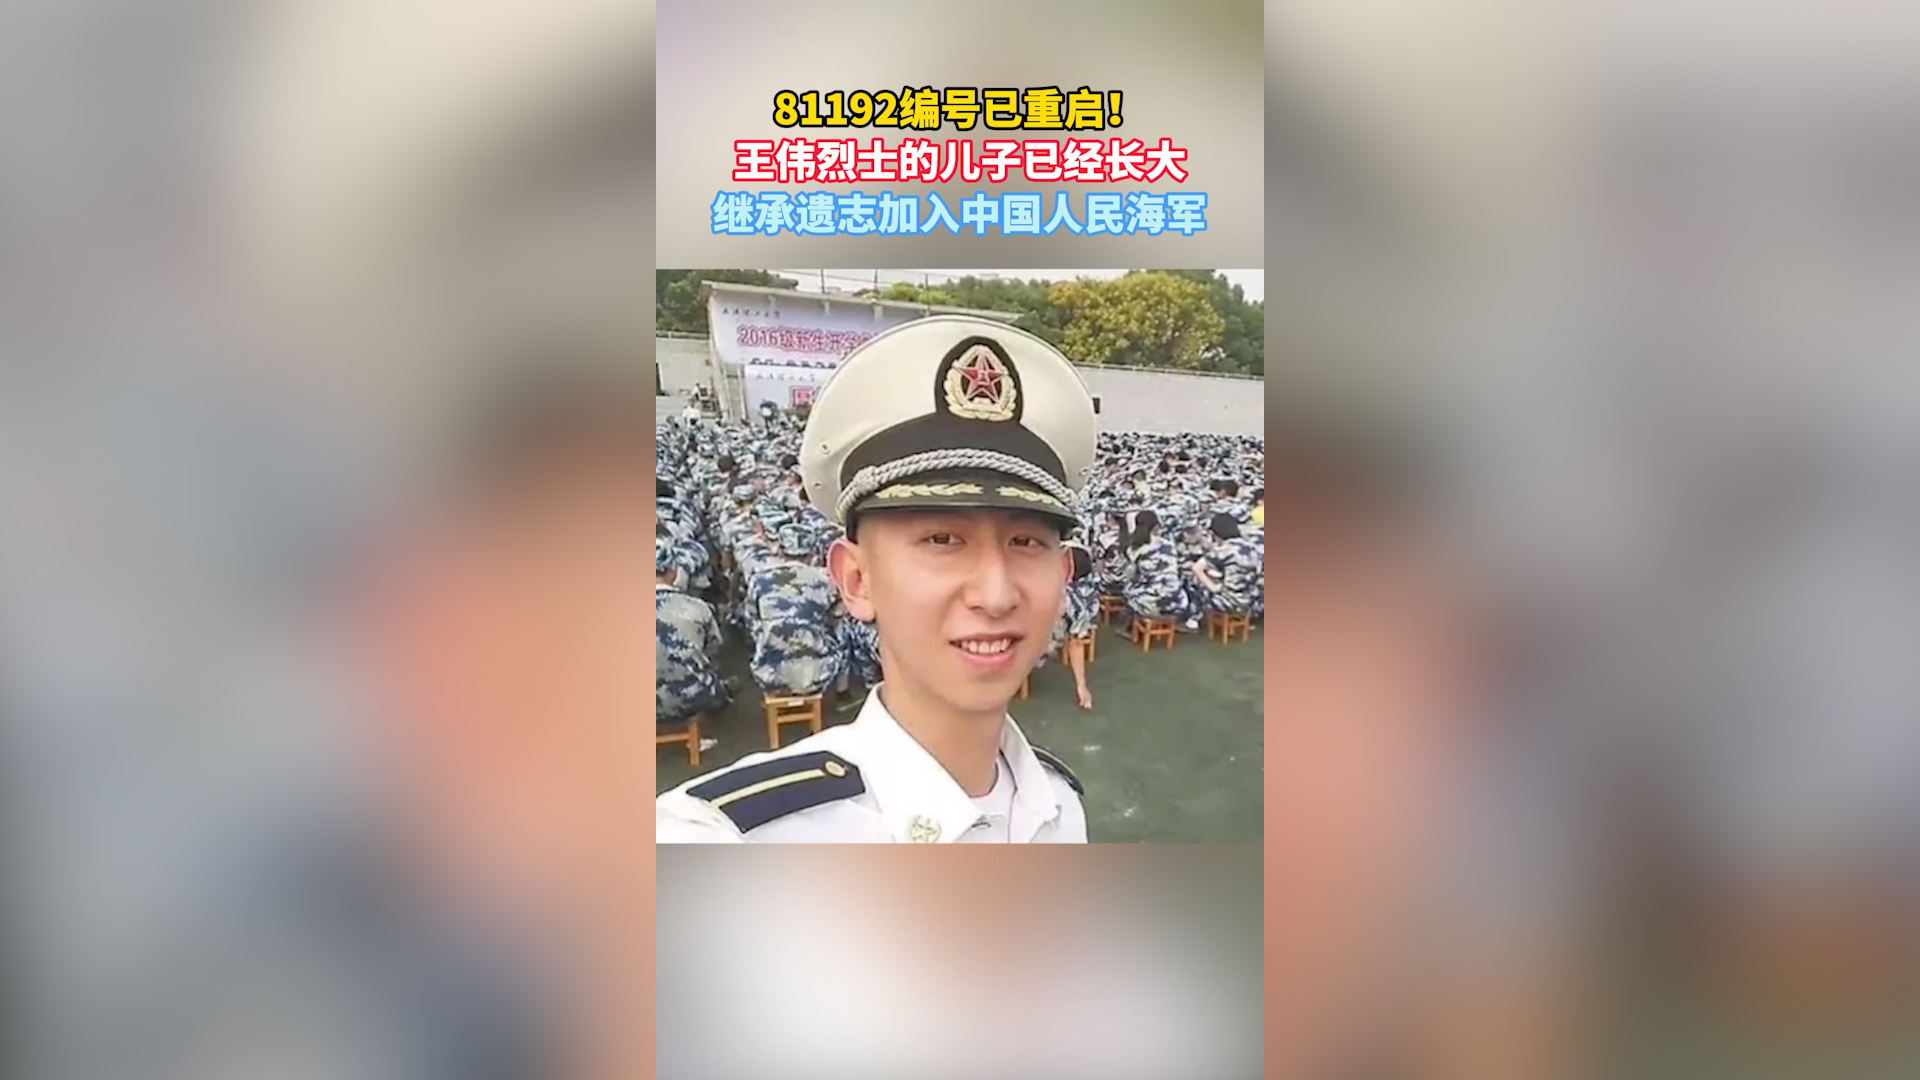 81192重启！王伟烈士的儿子继承遗志加入中国人民海军